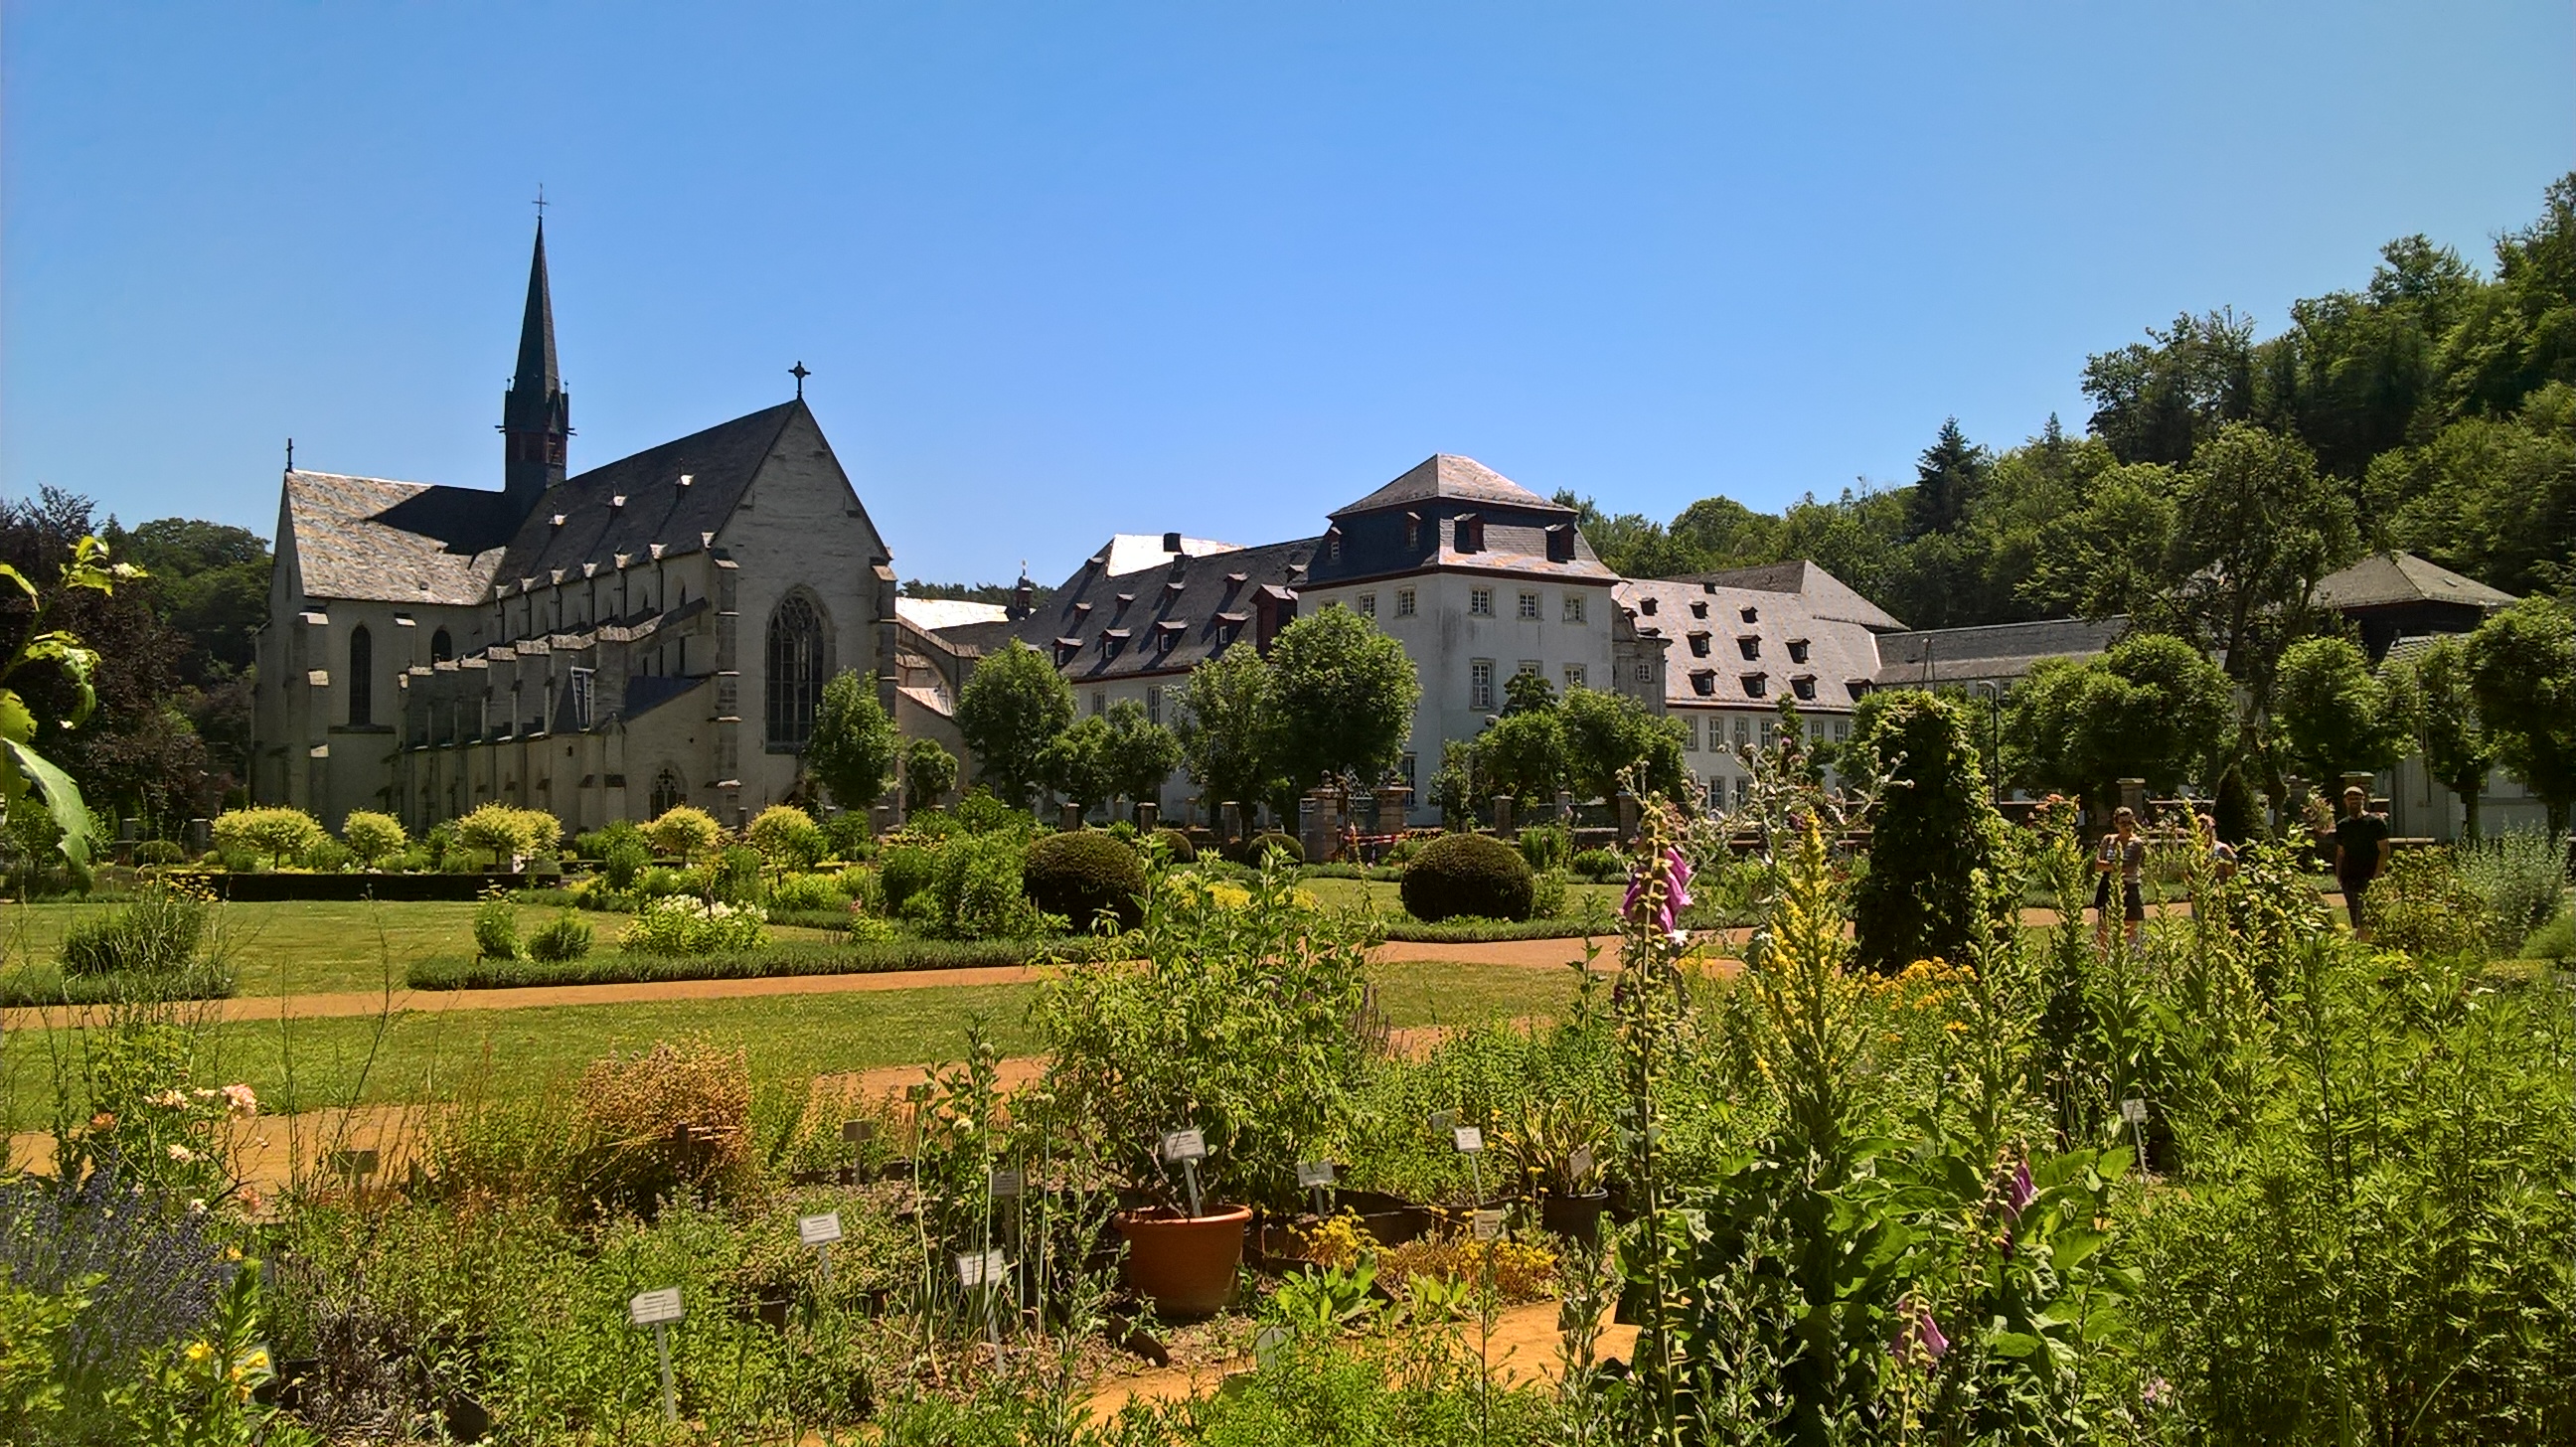 Abtei Marienstatt